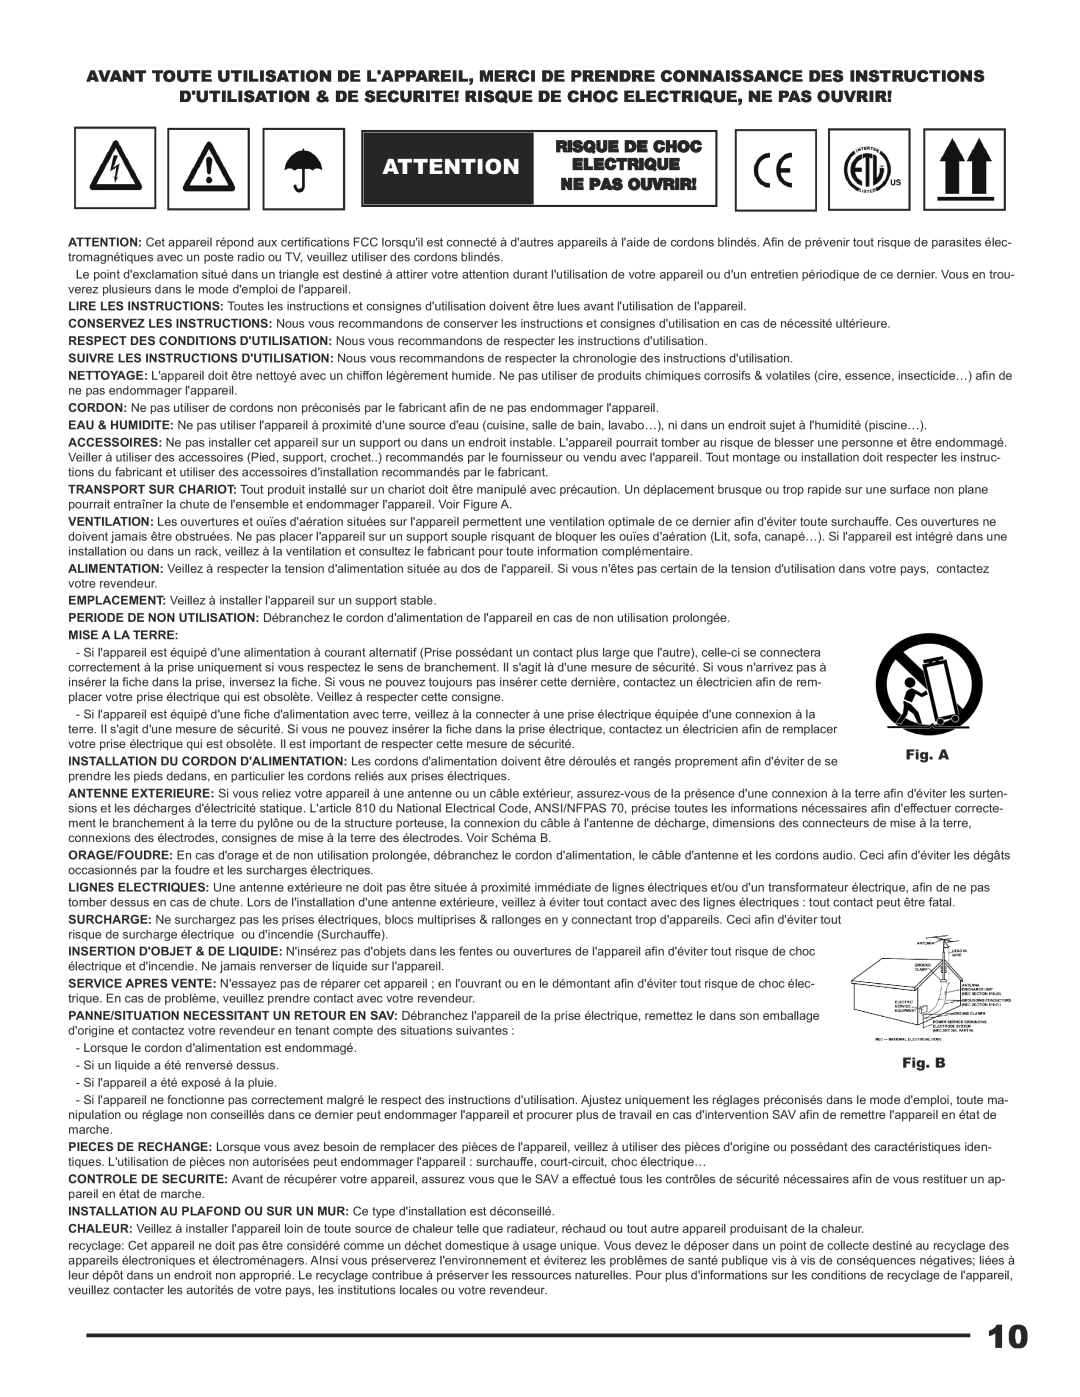 Gemini CDX-1250 manual Attention Electrique, Risque De Choc, Ne Pas Ouvrir, Fig. A, Fig. B, Mise A La Terre 